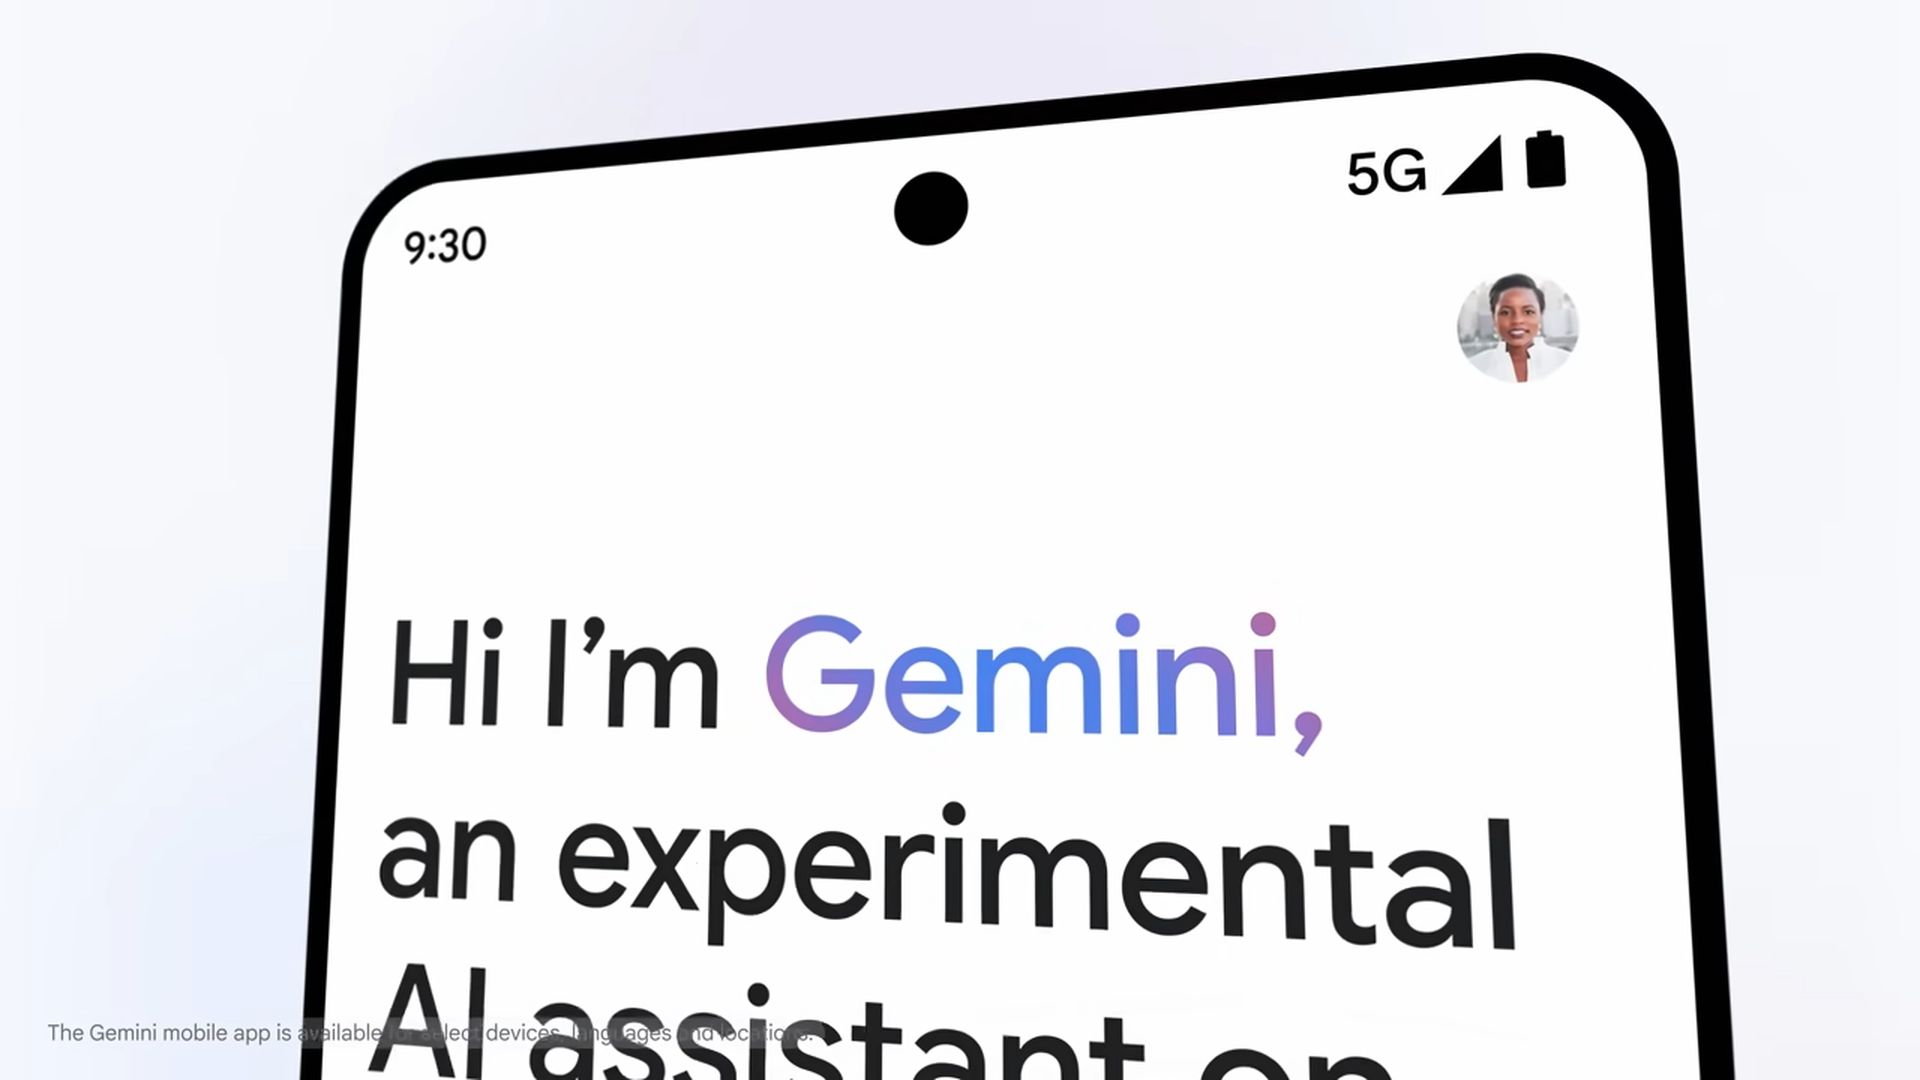 Версия Gemini для Android получит функцию ответов в реальном времени